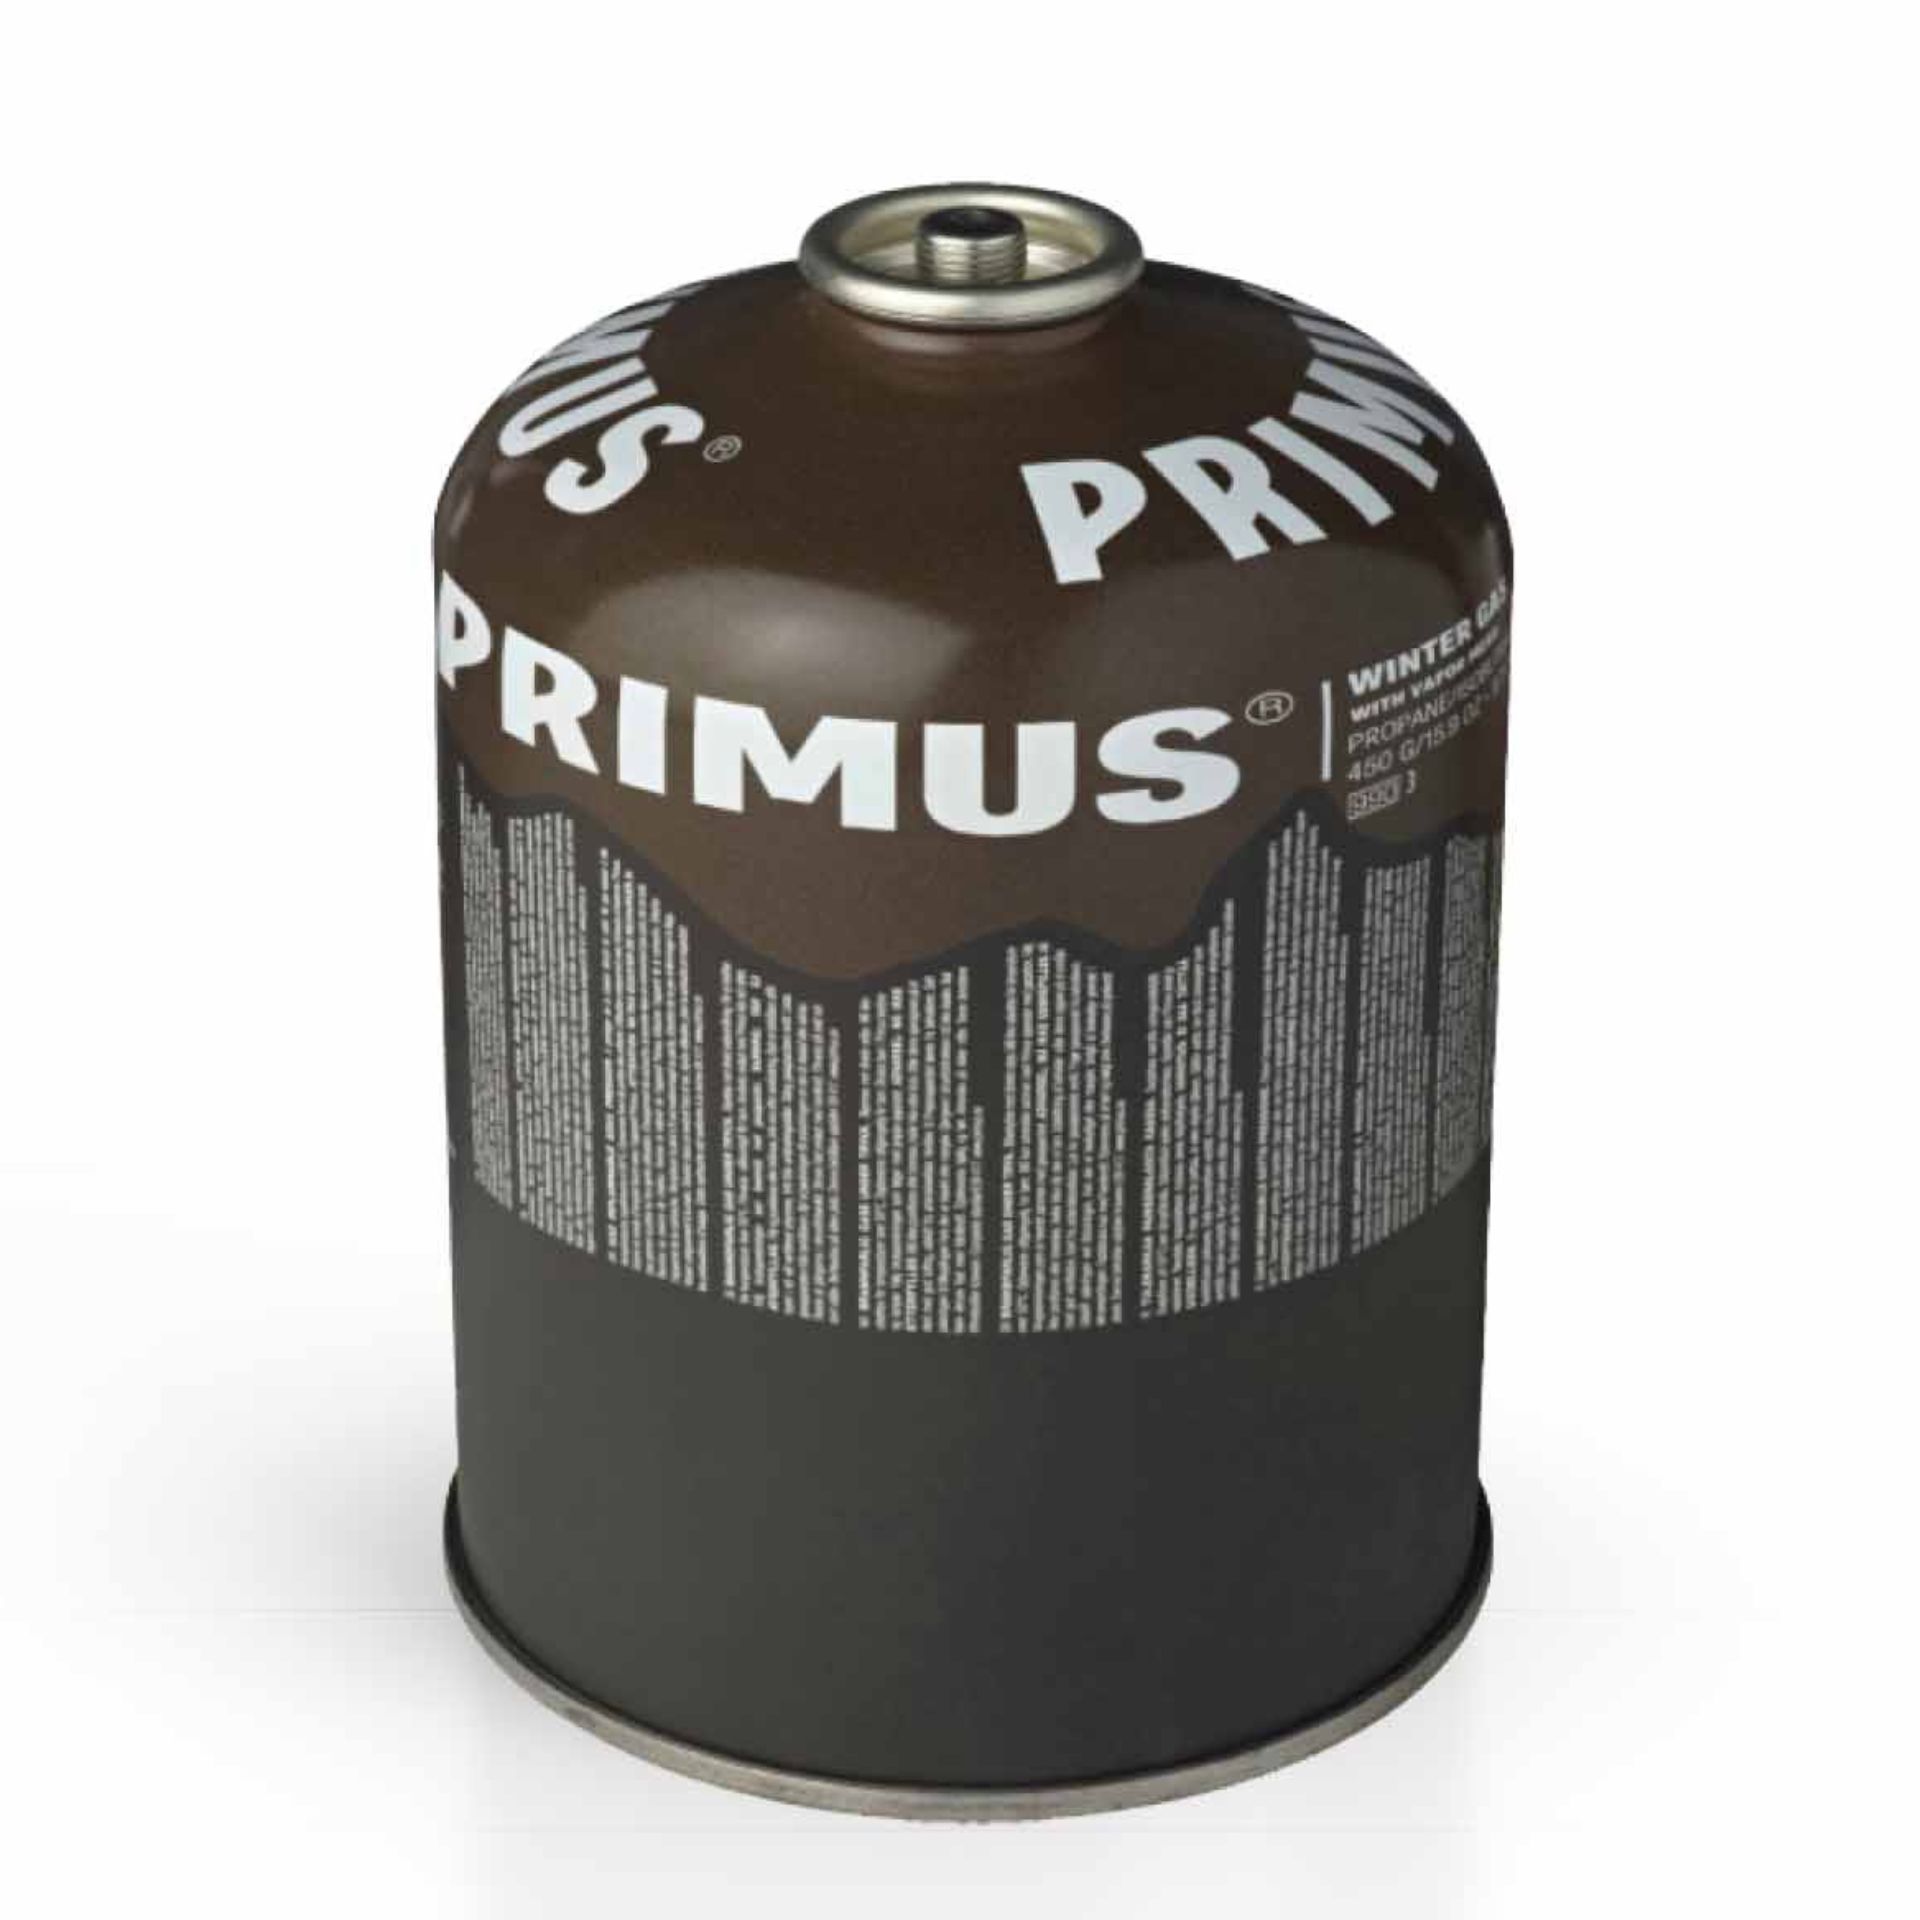 PRIMUS VINTERGAS 450 g/UN2037